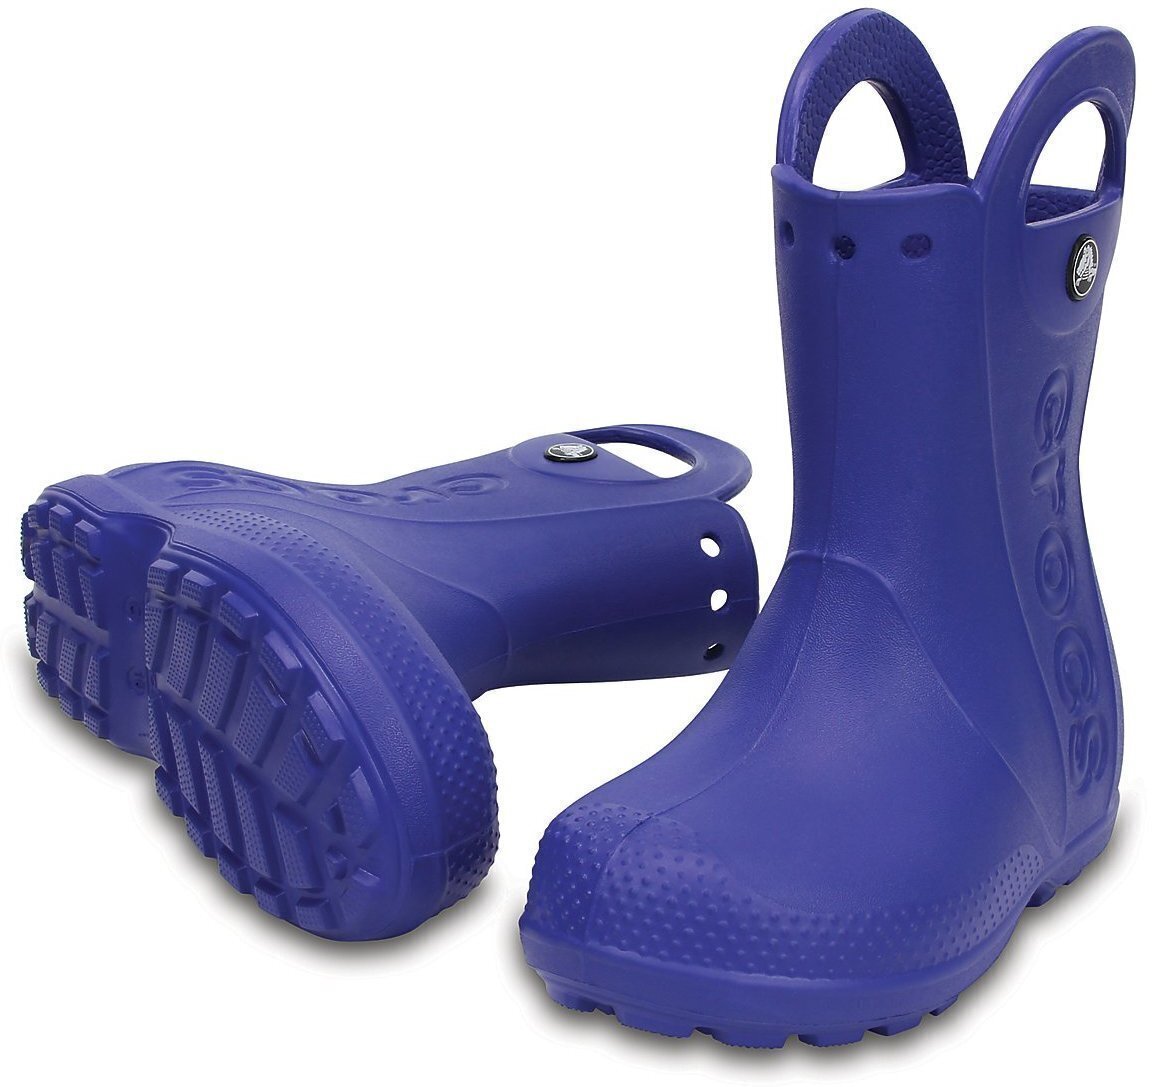 Chaussures de bateau enfant Crocs Handle It Rain Boot Chaussures de bateau enfant